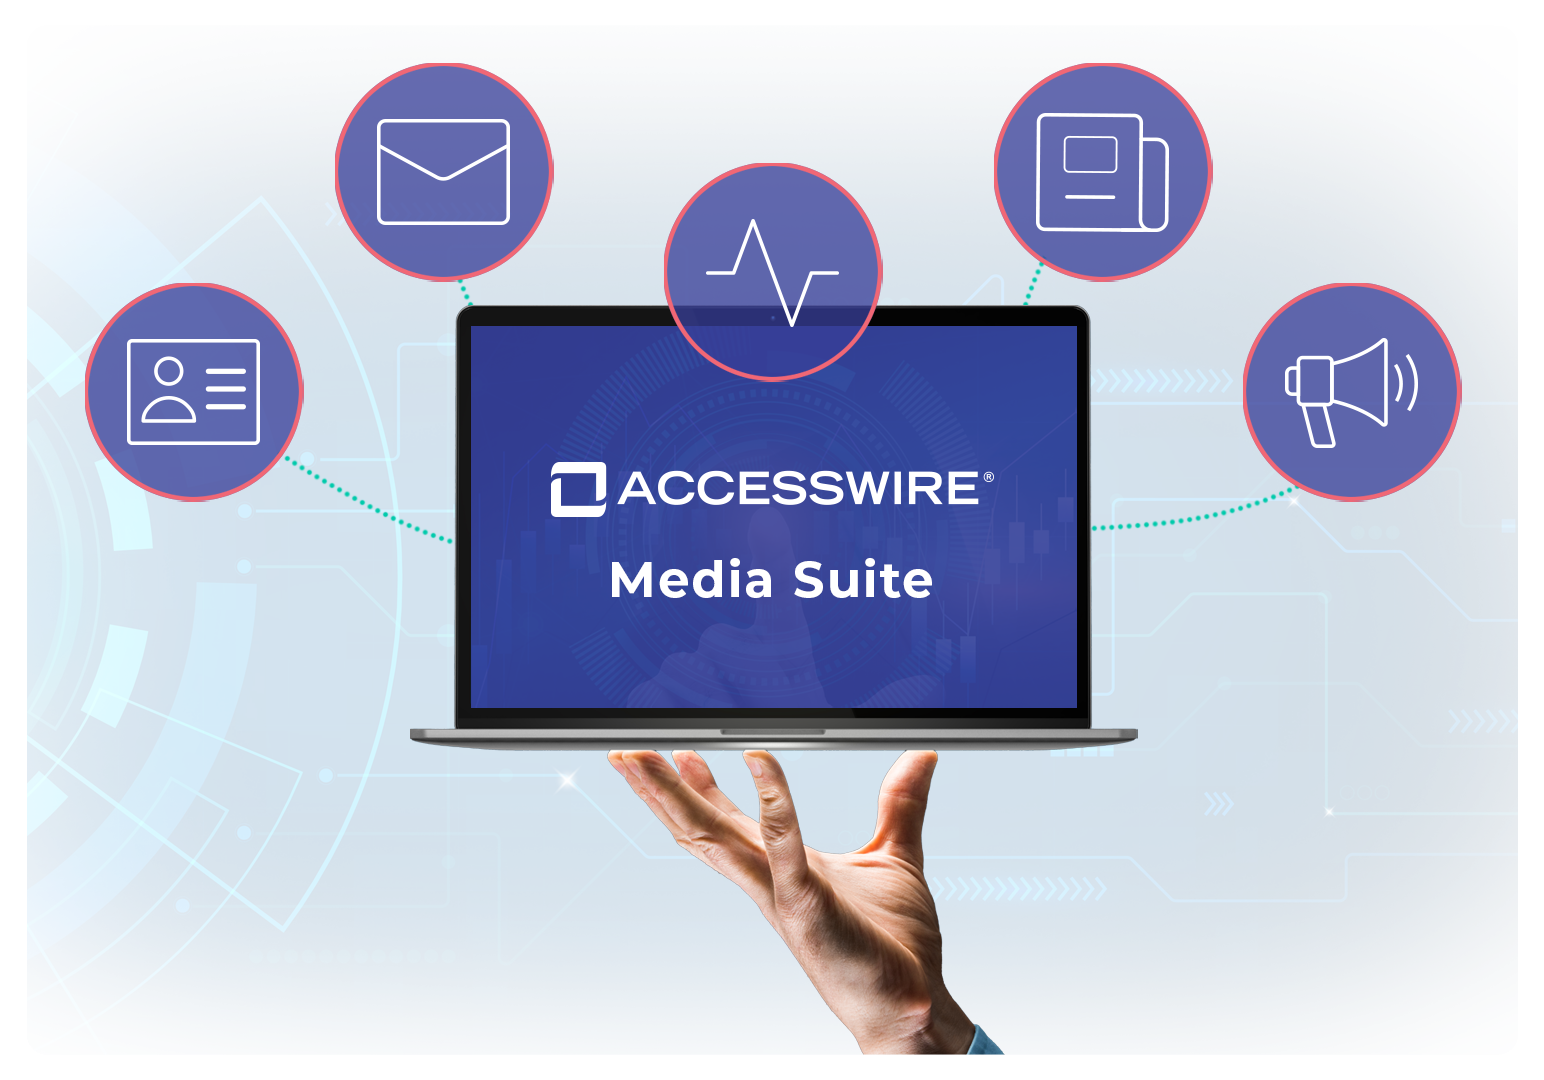 ACCESSWIRE | Media Suite